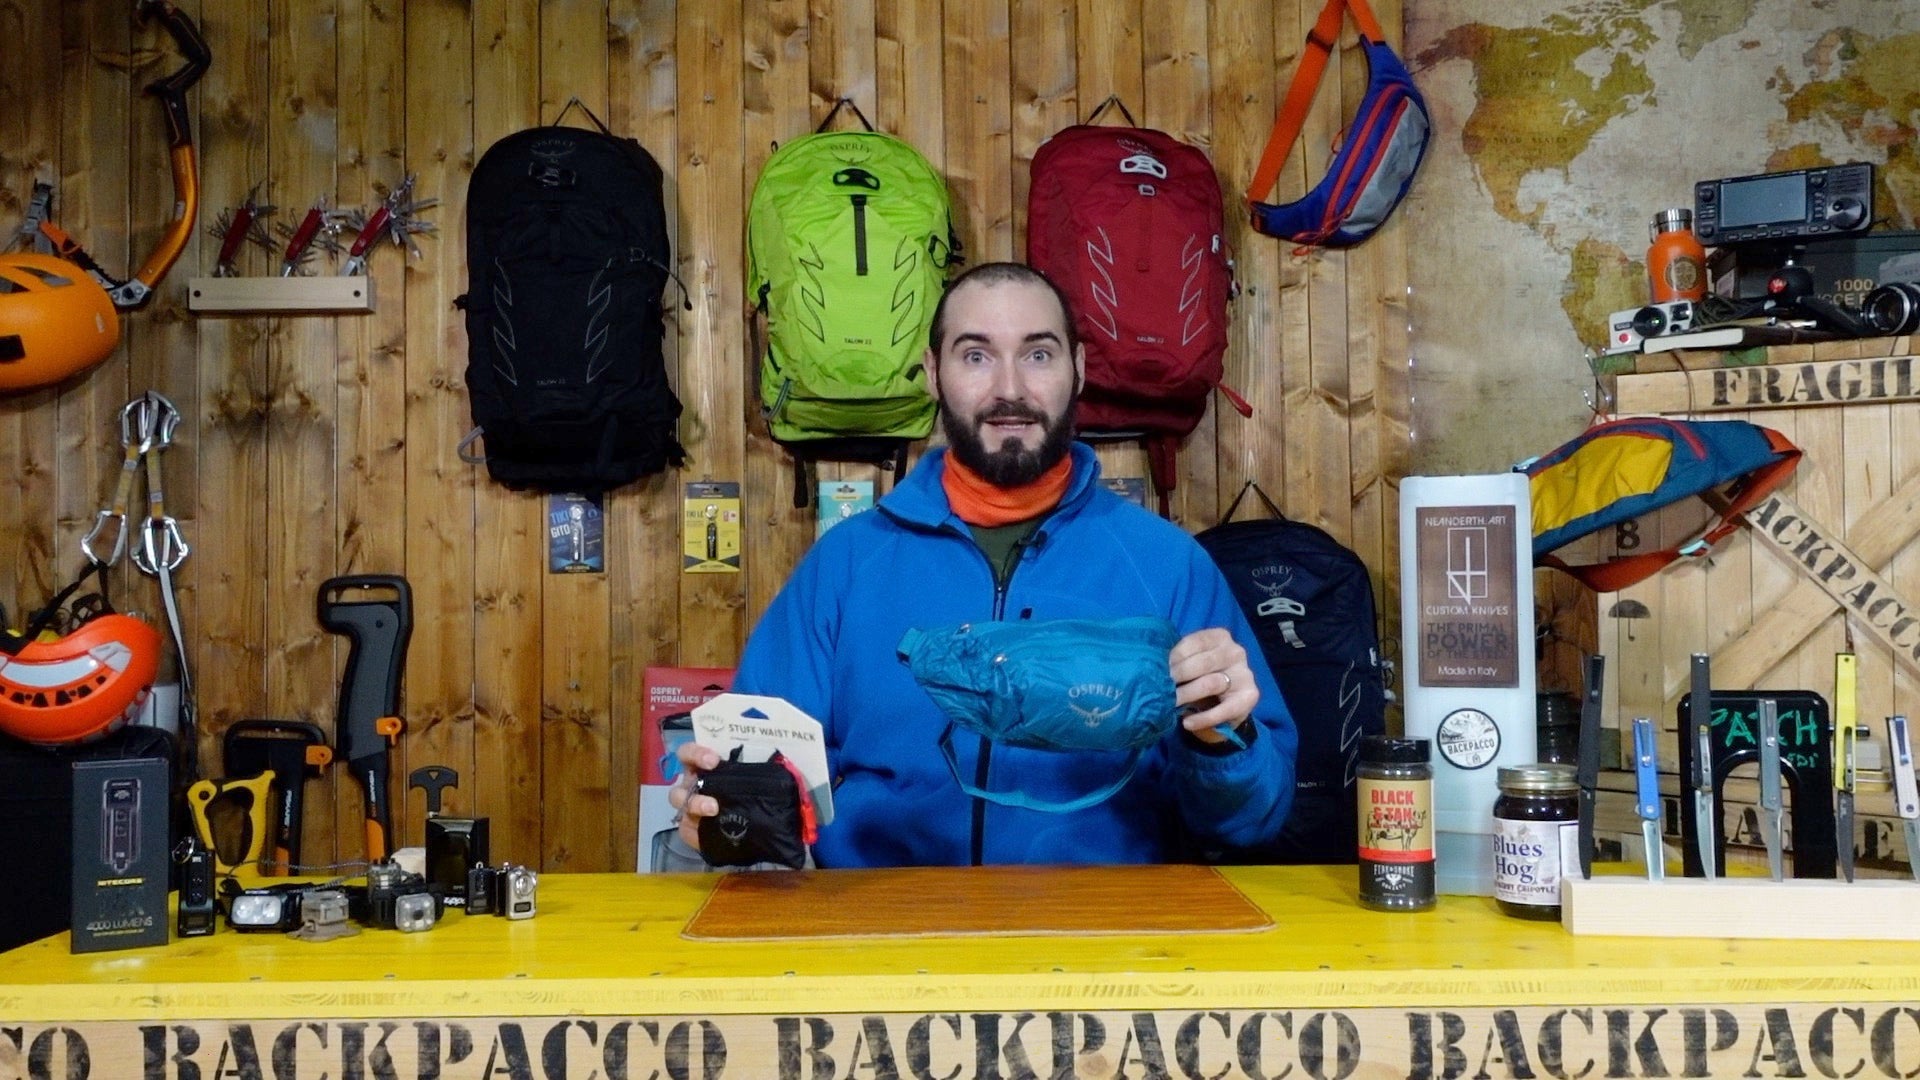 Paolo di backpacco spiega l'ultralight stuff waist pack di osprey